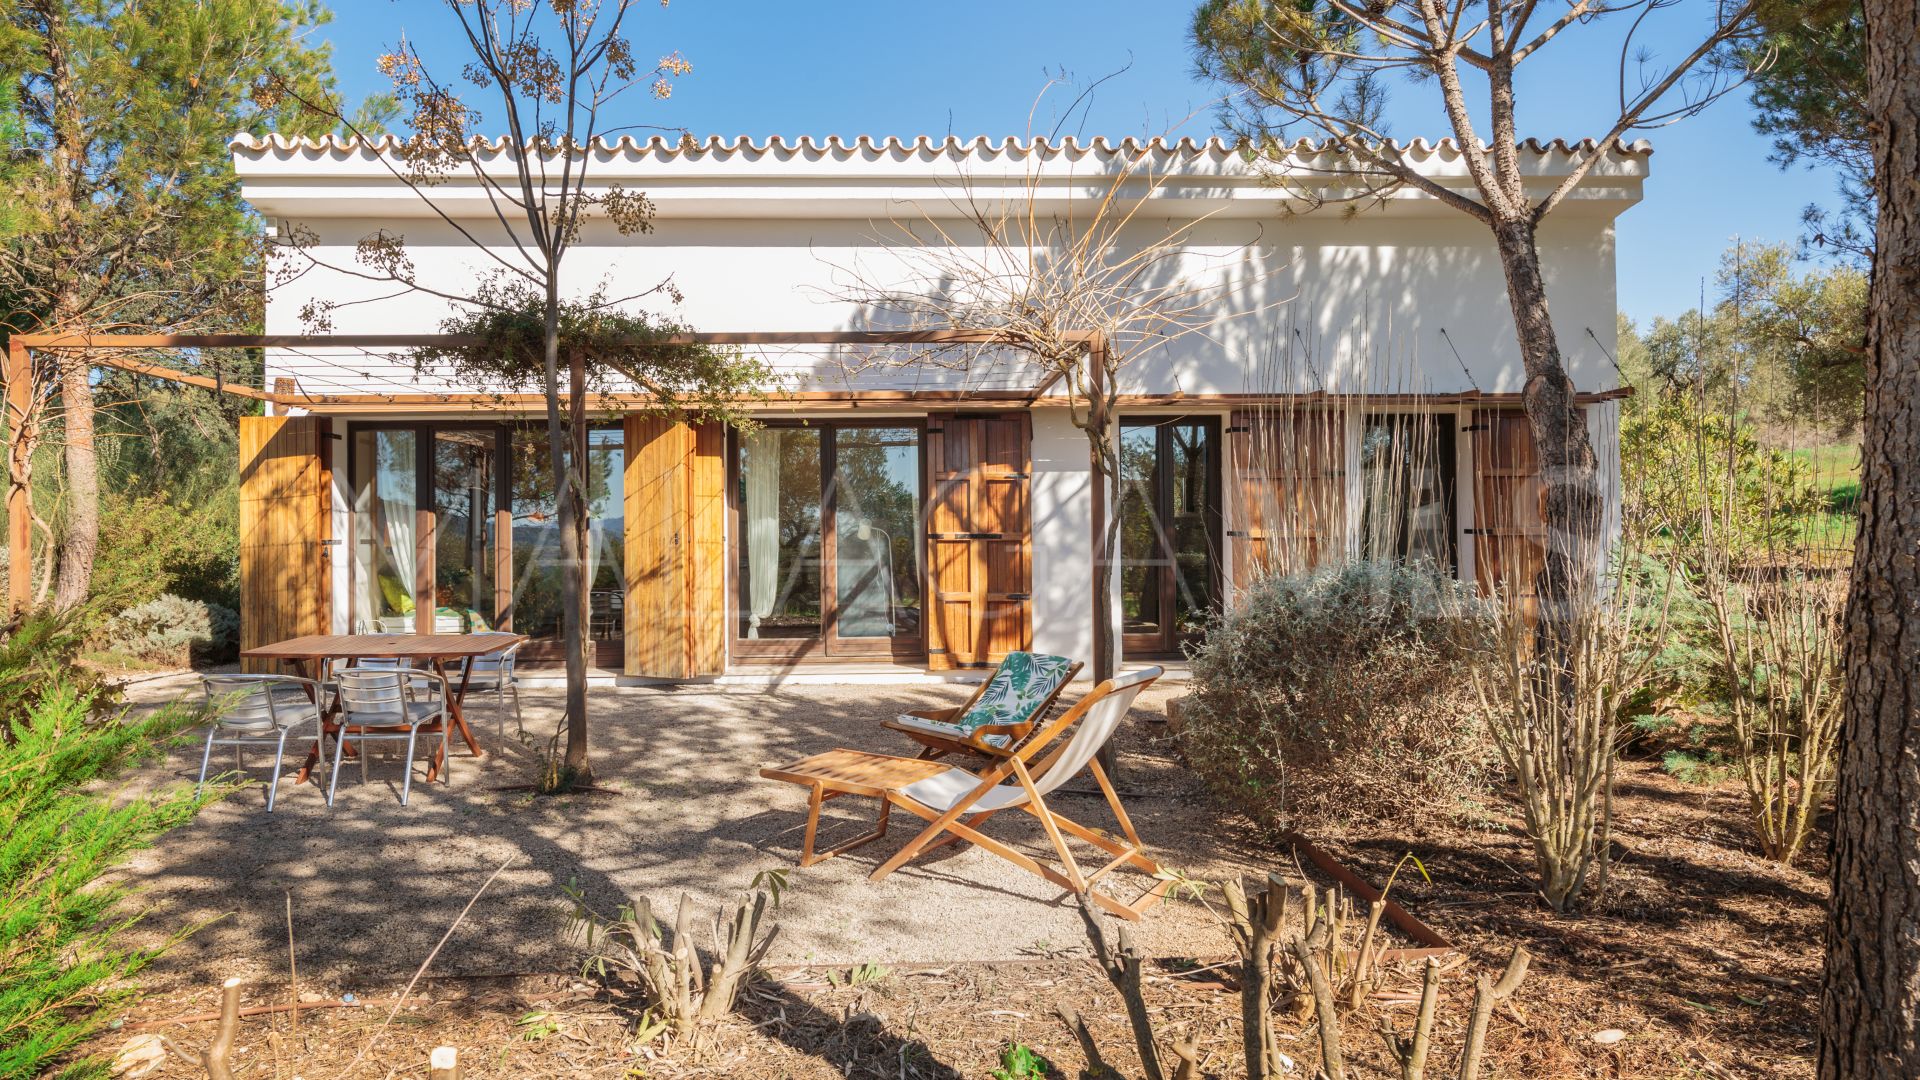 Casa de campo for sale in Ronda